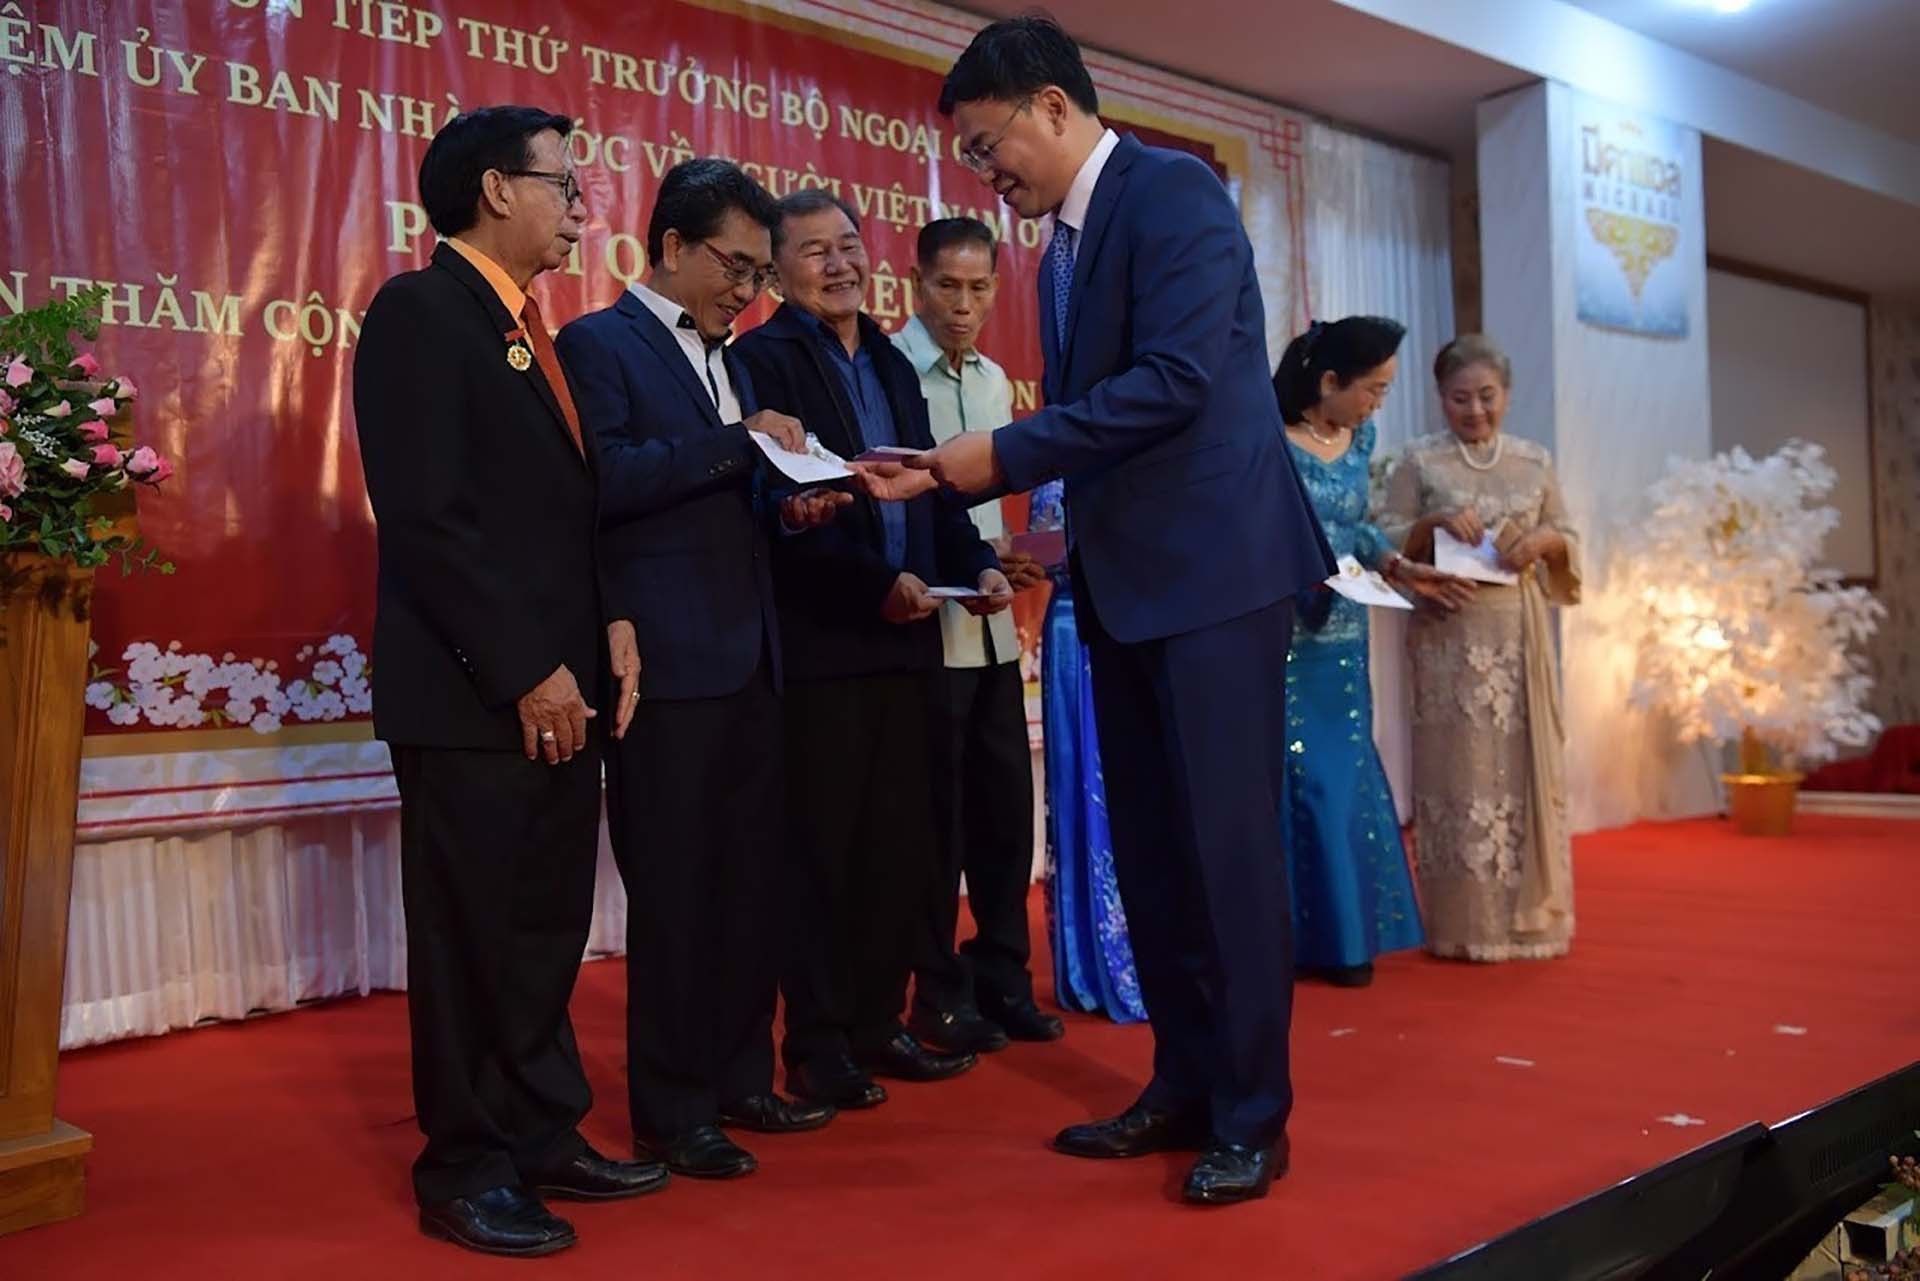 Thứ trưởng Phạm Quang Hiệu tại lễ trao tặng bằng khen và quà cho các hội đoàn người Việt cùng một số kiều bào có công, kiều bào lão thành. (Nguồn: TTXVN